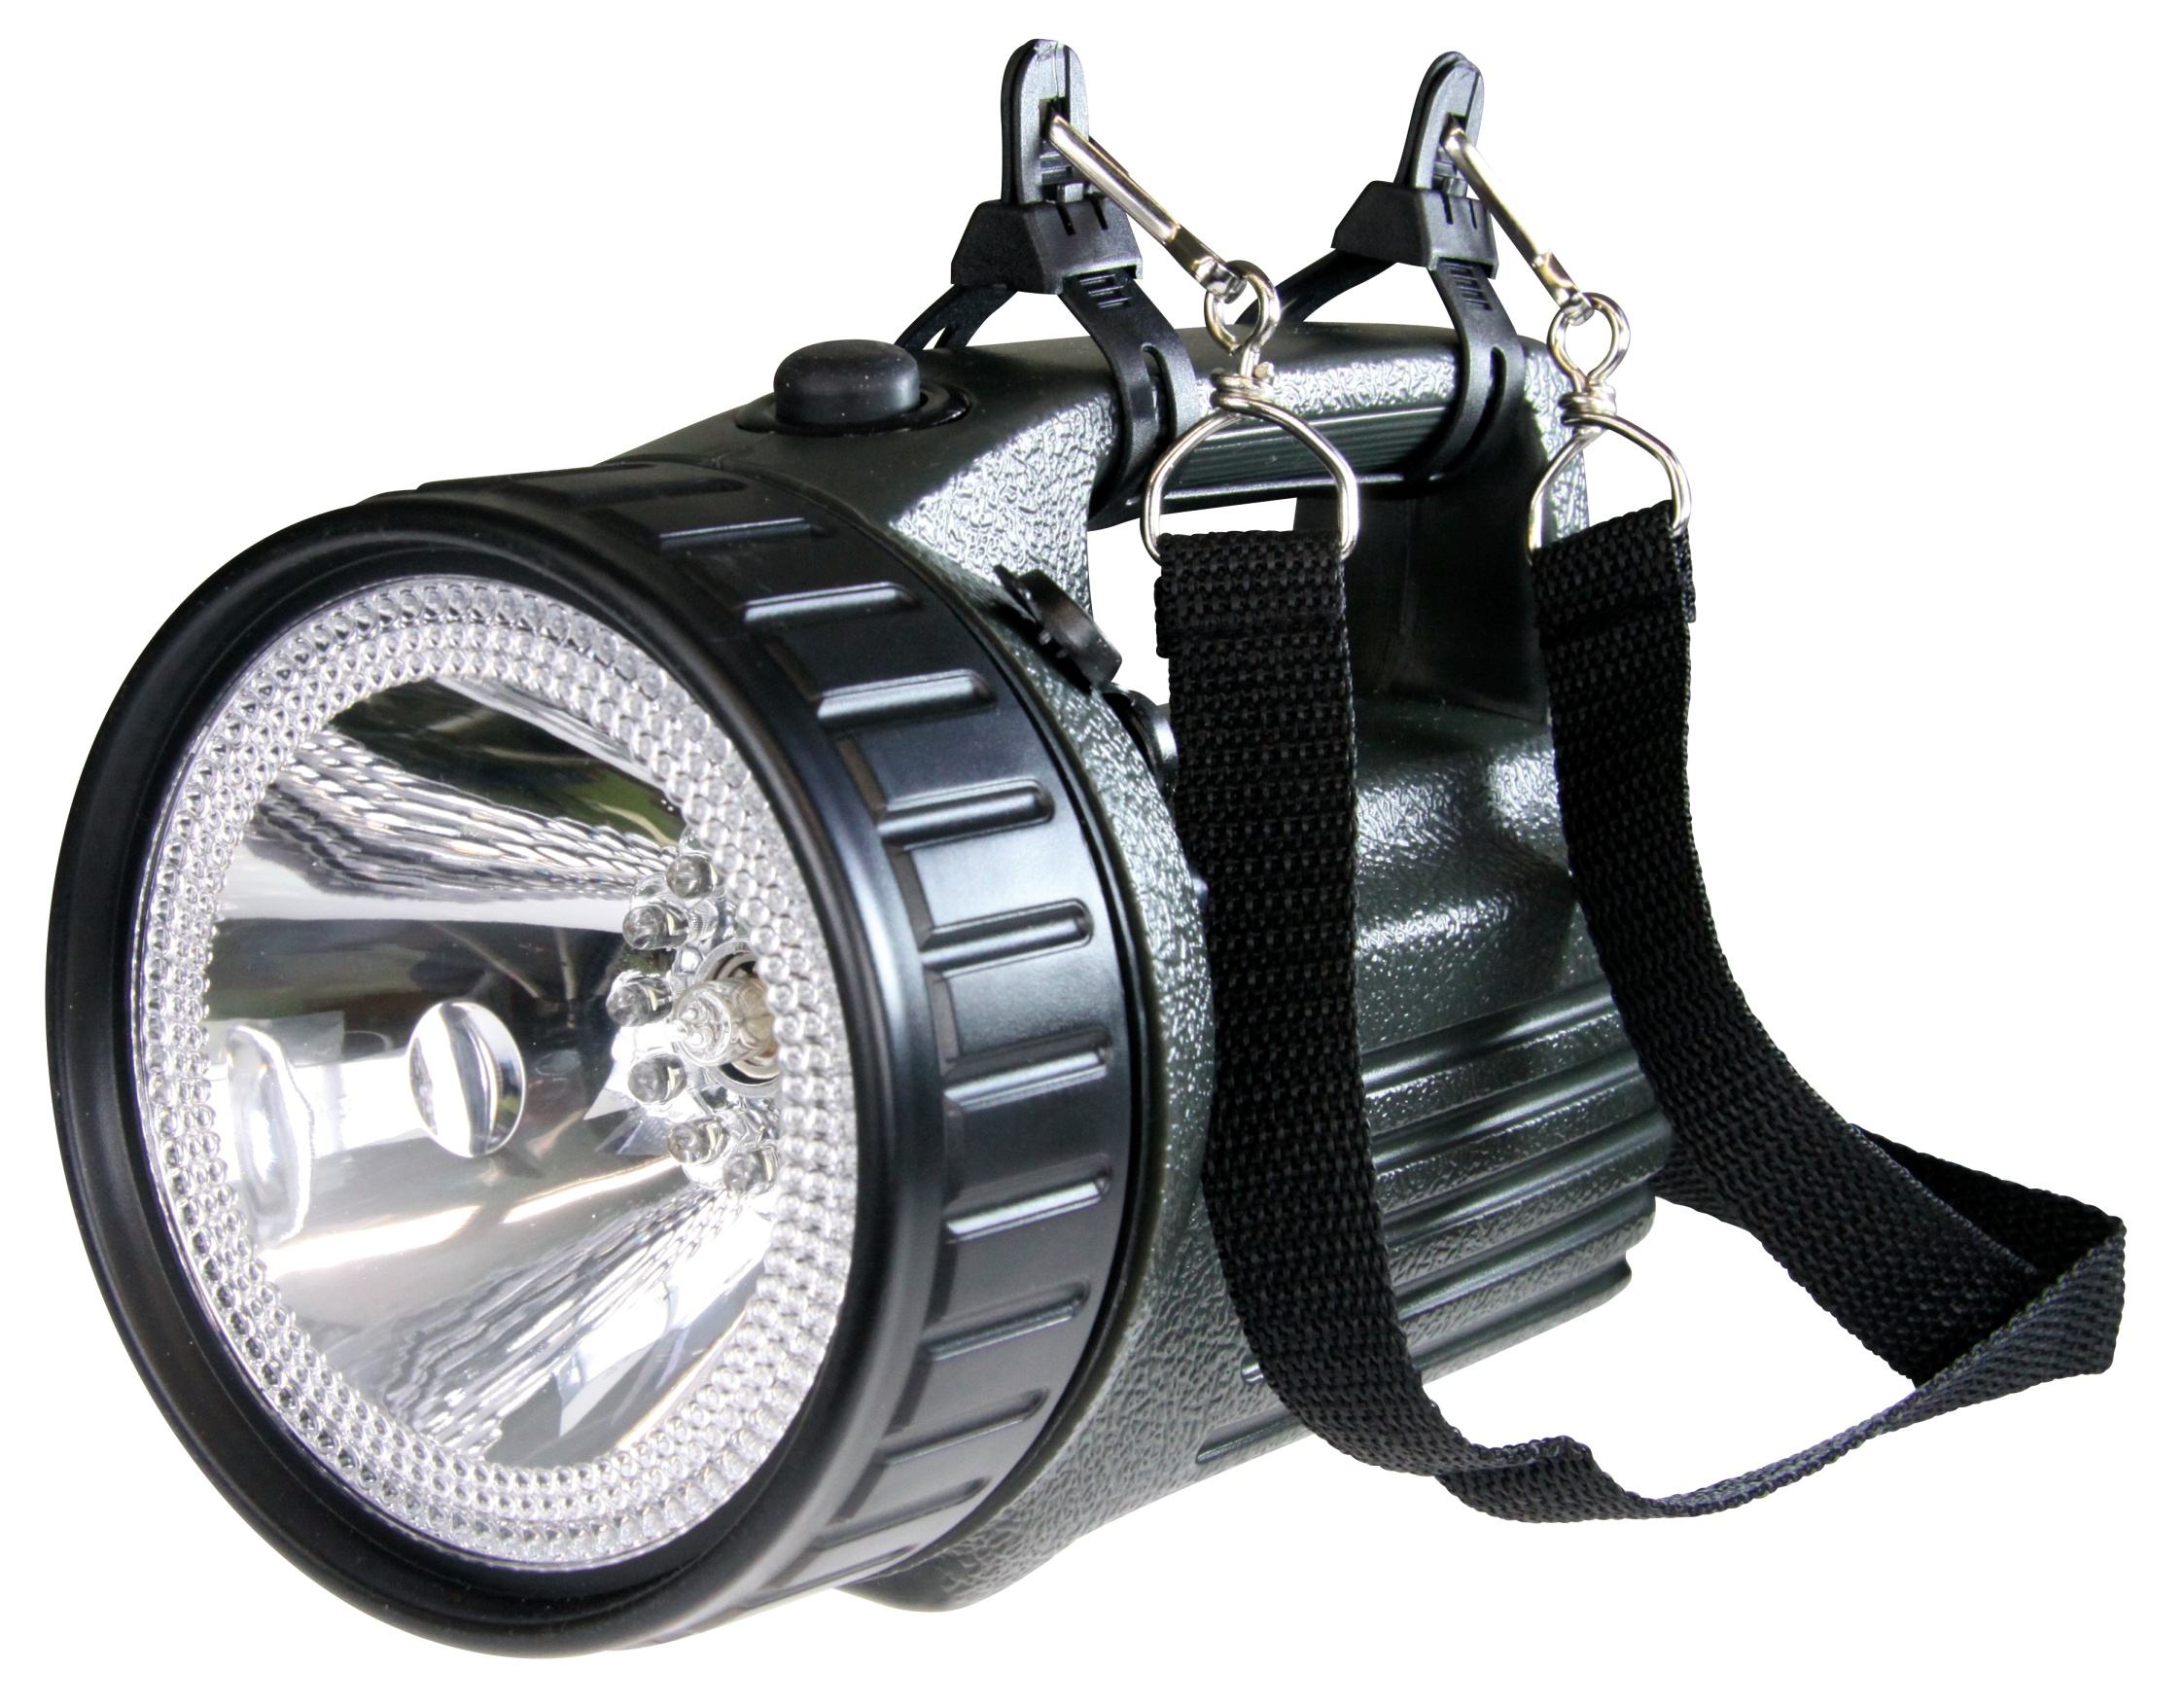 Ruční nabíjecí svítilna LED 3810  Expert (P2307 ) 10W s nabíječkou 230V /12V